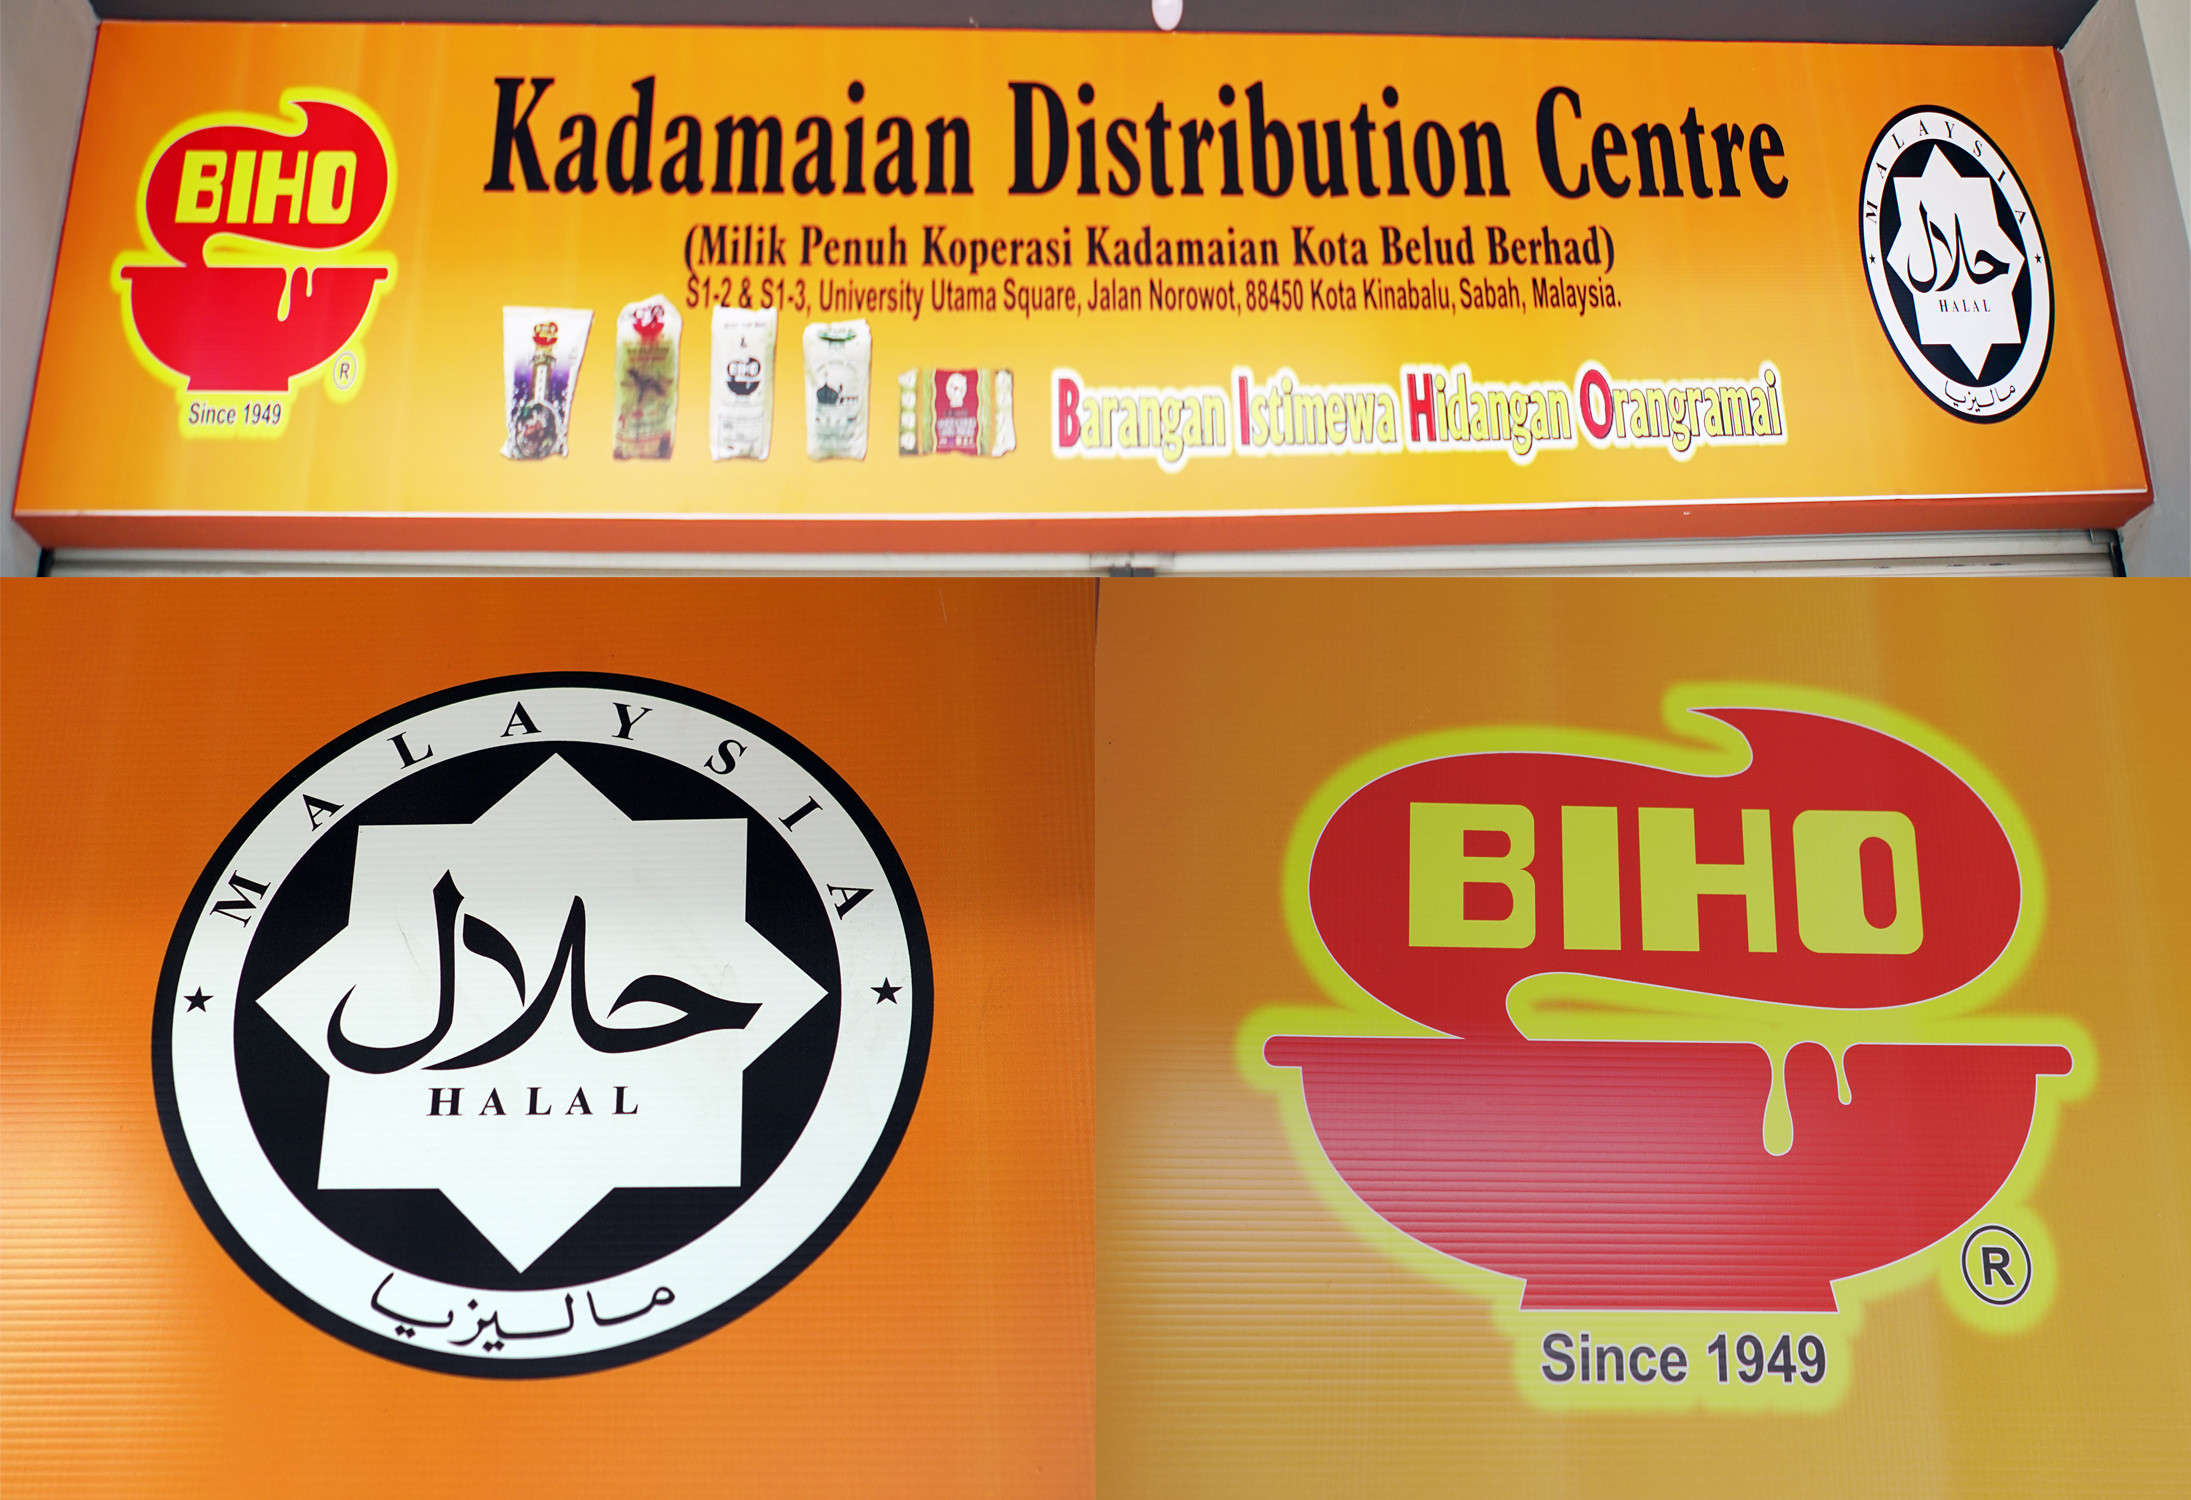 Kadamaian Distribution Center (UUS1 SI-2 & SI-3)